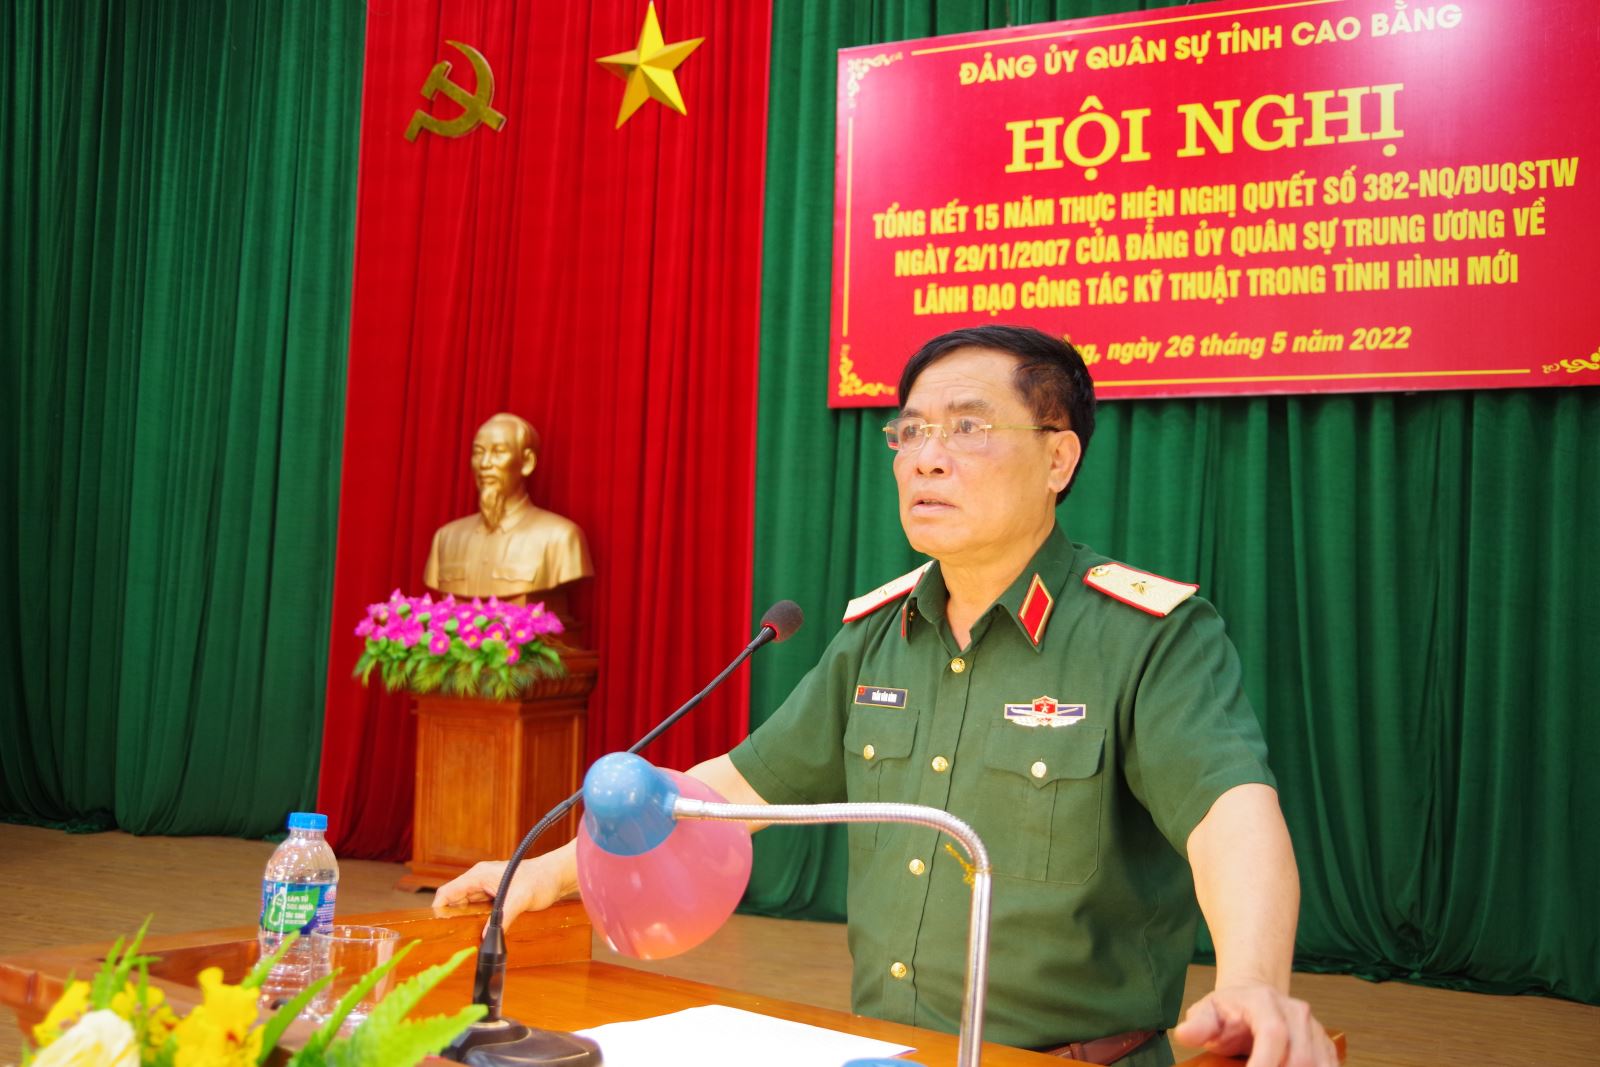 Đảng ủy Quân sự tỉnh Cao Bằng tổng kết 15 năm thực hiện Nghị quyết 382 về lãnh đạo công tác kỹ thuật